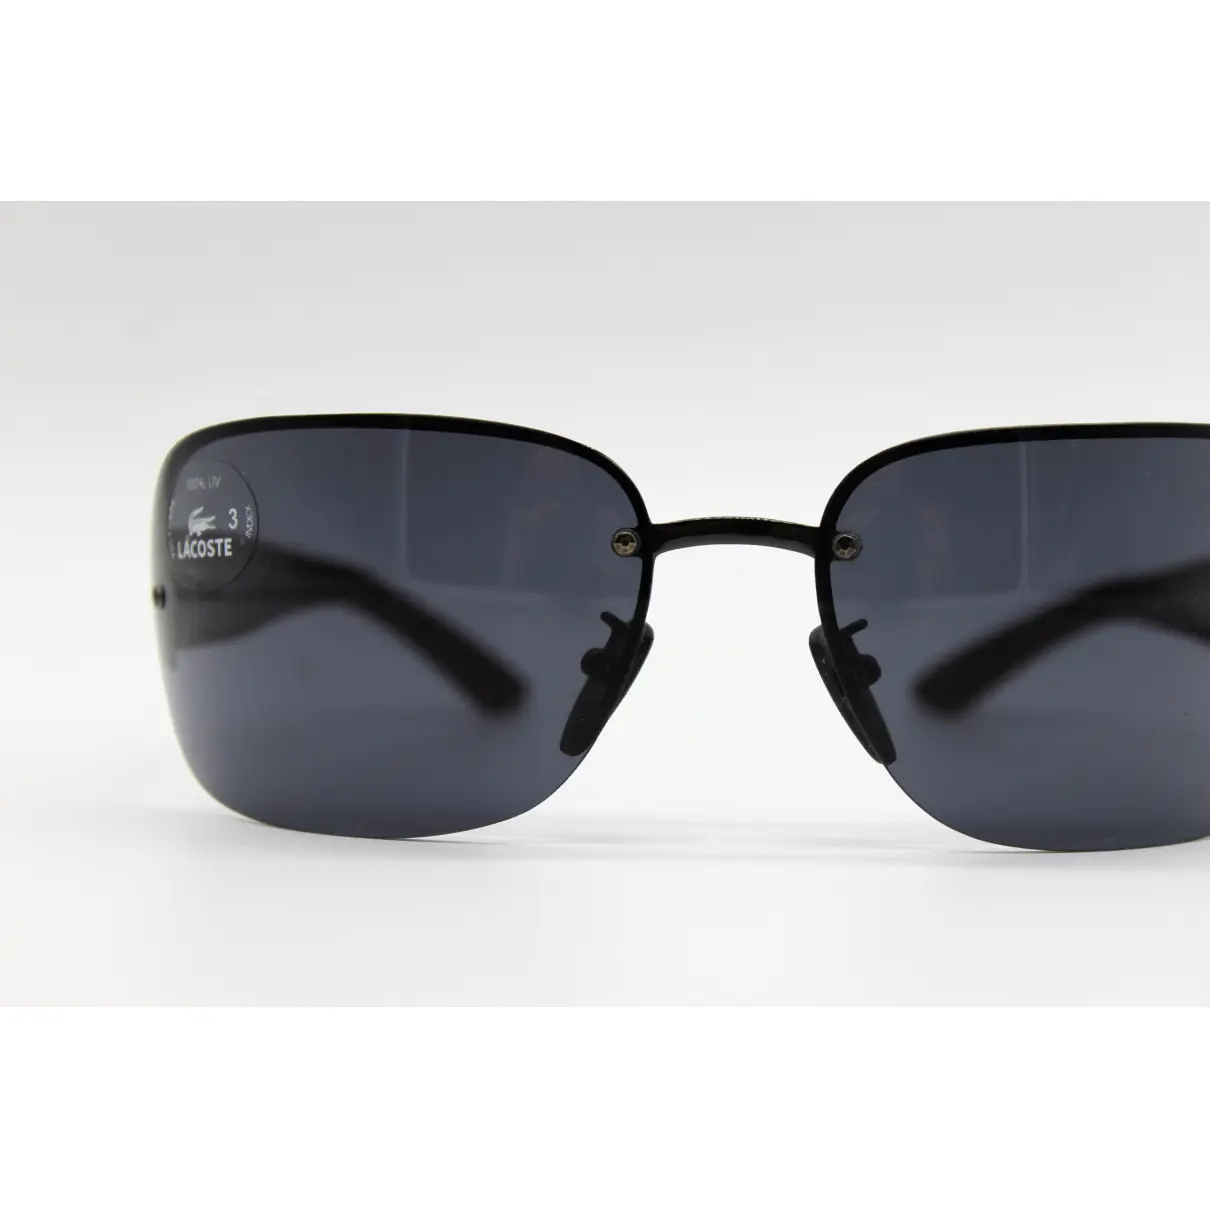 Sunglasses Lacoste - Vintage